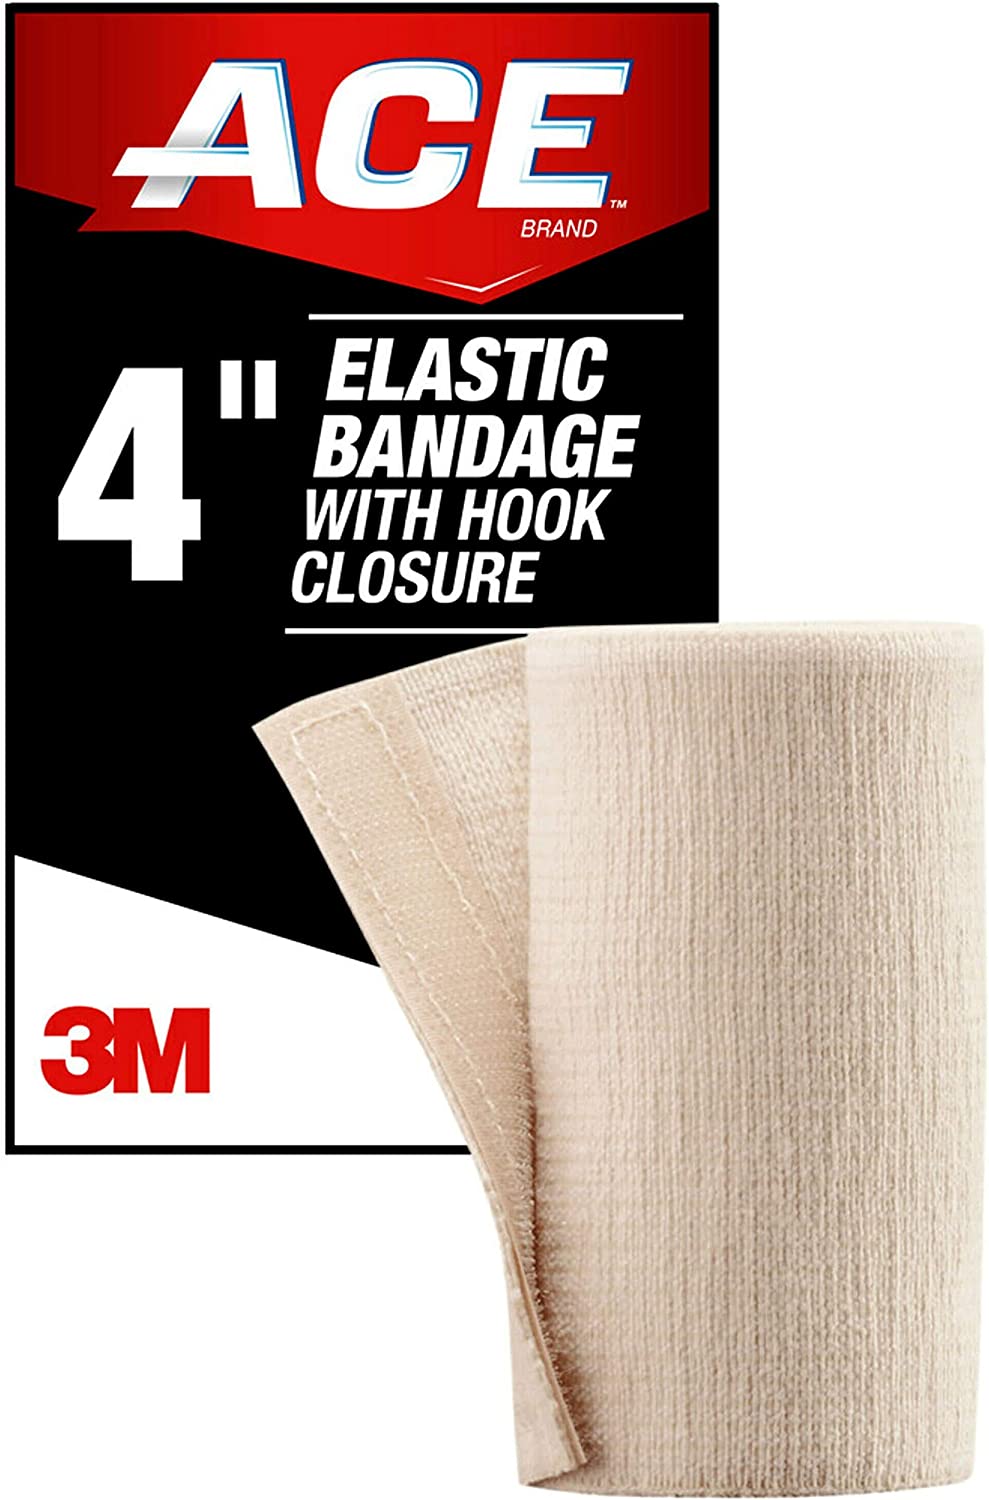 '''ACE 4'''' Elastic Bandage with Hook Closure\ Beige'''